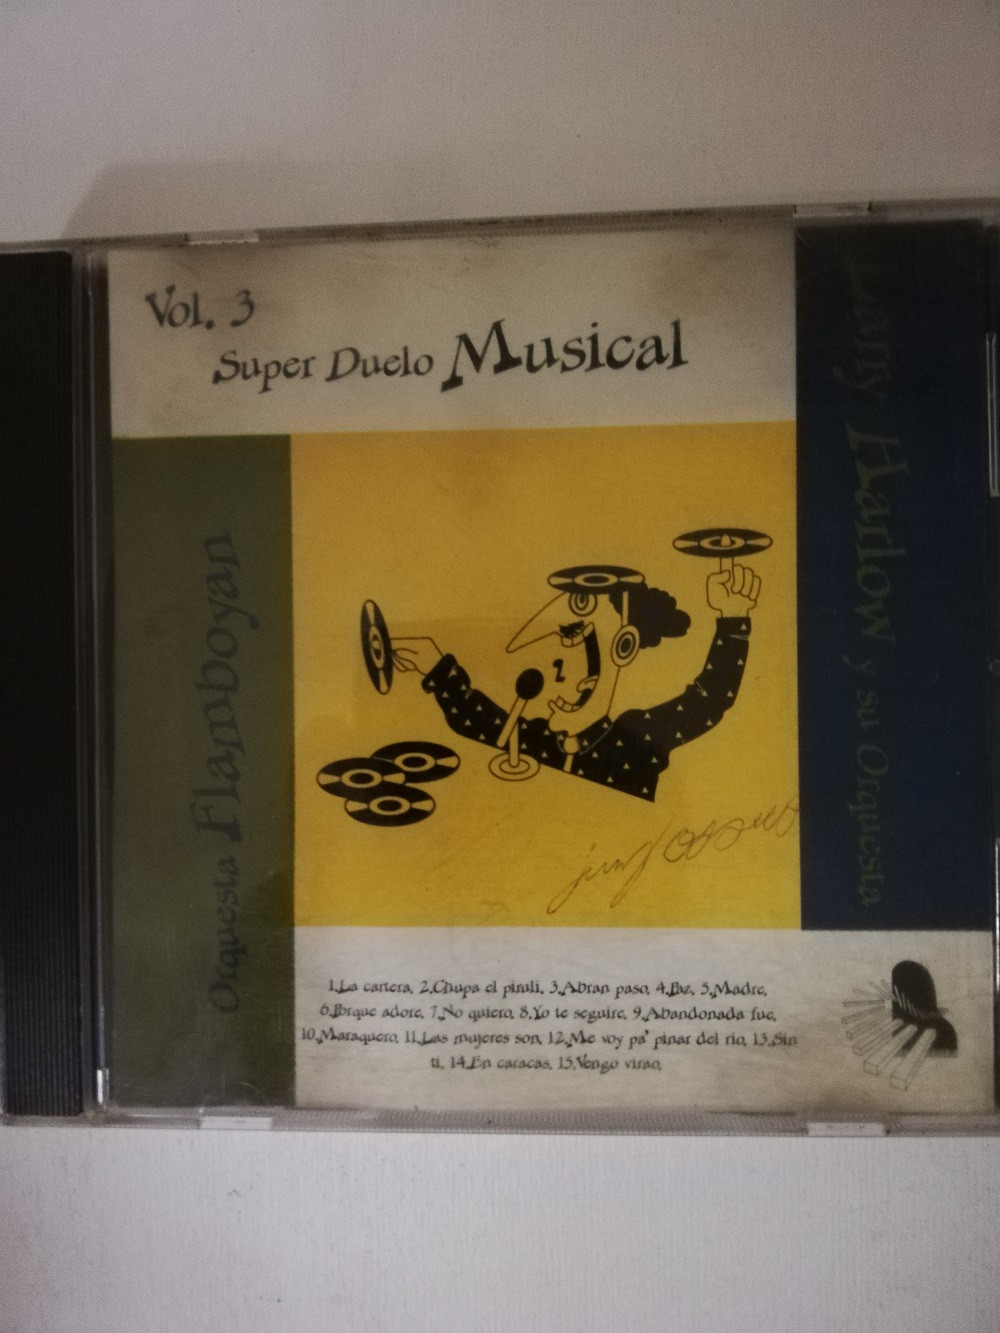 Imagen CD ORQUESTA FLAMBOYAN/LARRY HARLOW Y SU ORQUESTA - SUPER DUELO MUSICAL VOL. 3 1